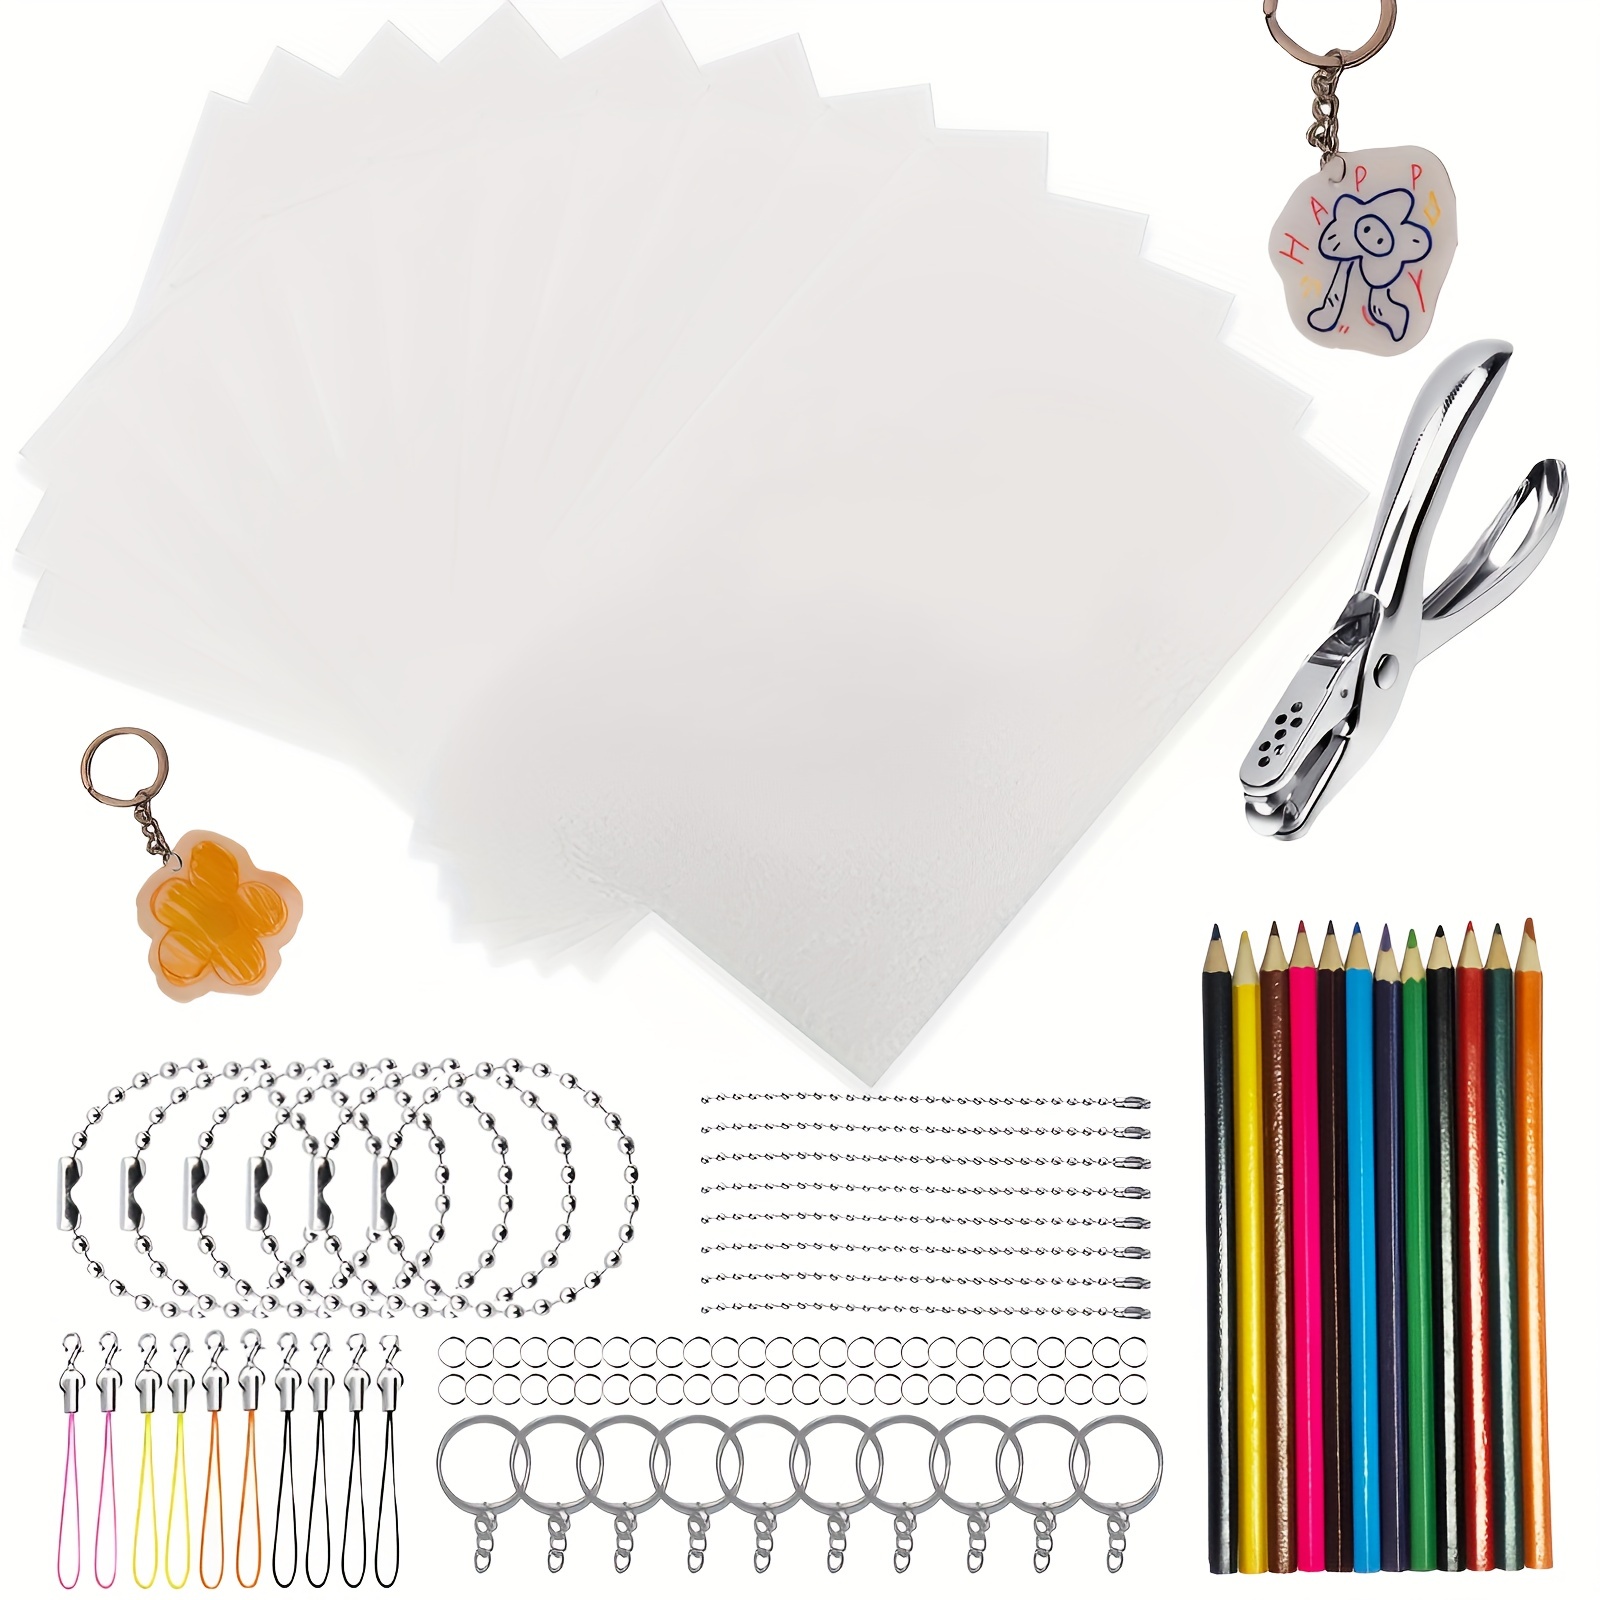 Shrink Plastic Sheet Kit for Shrinky Dink, 175 Pcs Heat Shrinky